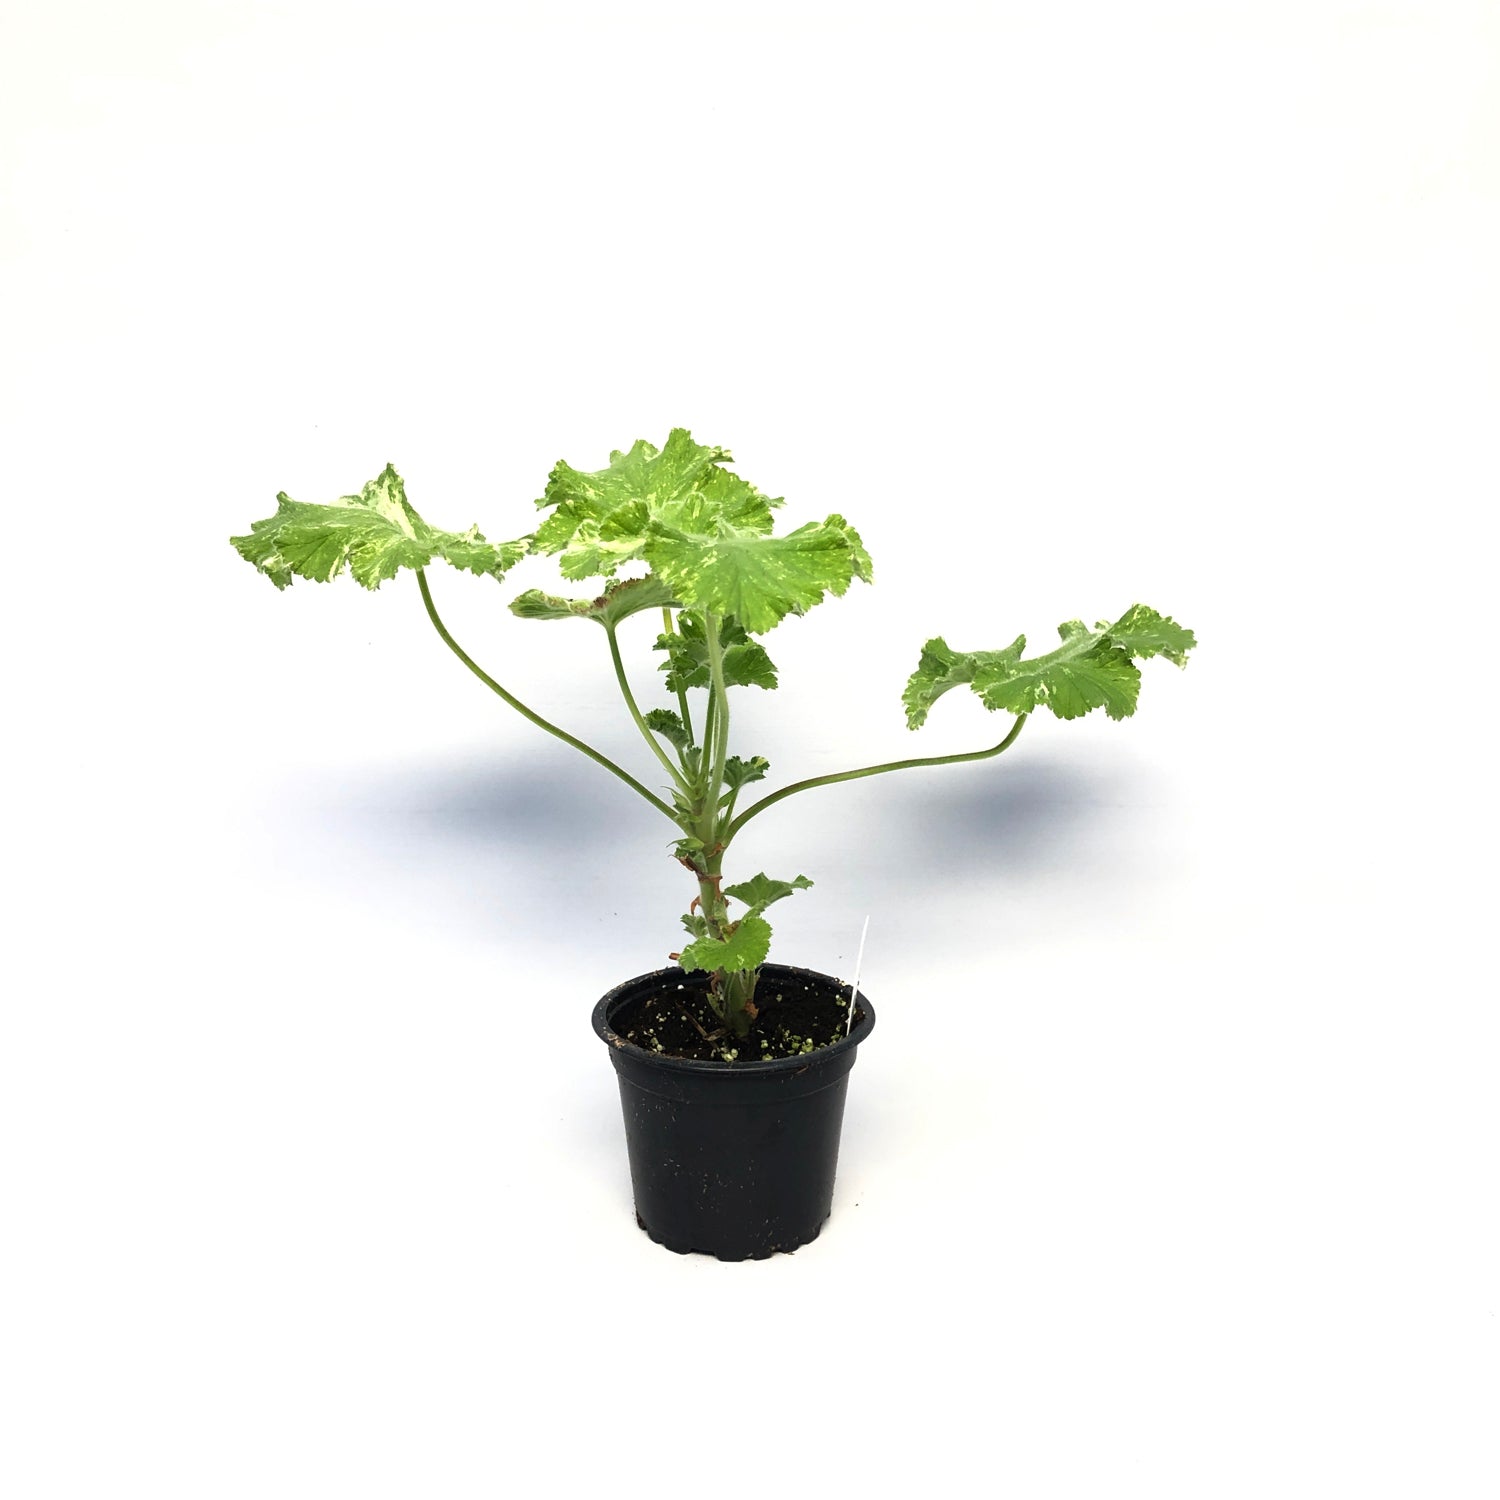 Pelargonium ‘Snowflake’ (Scented Geranium)